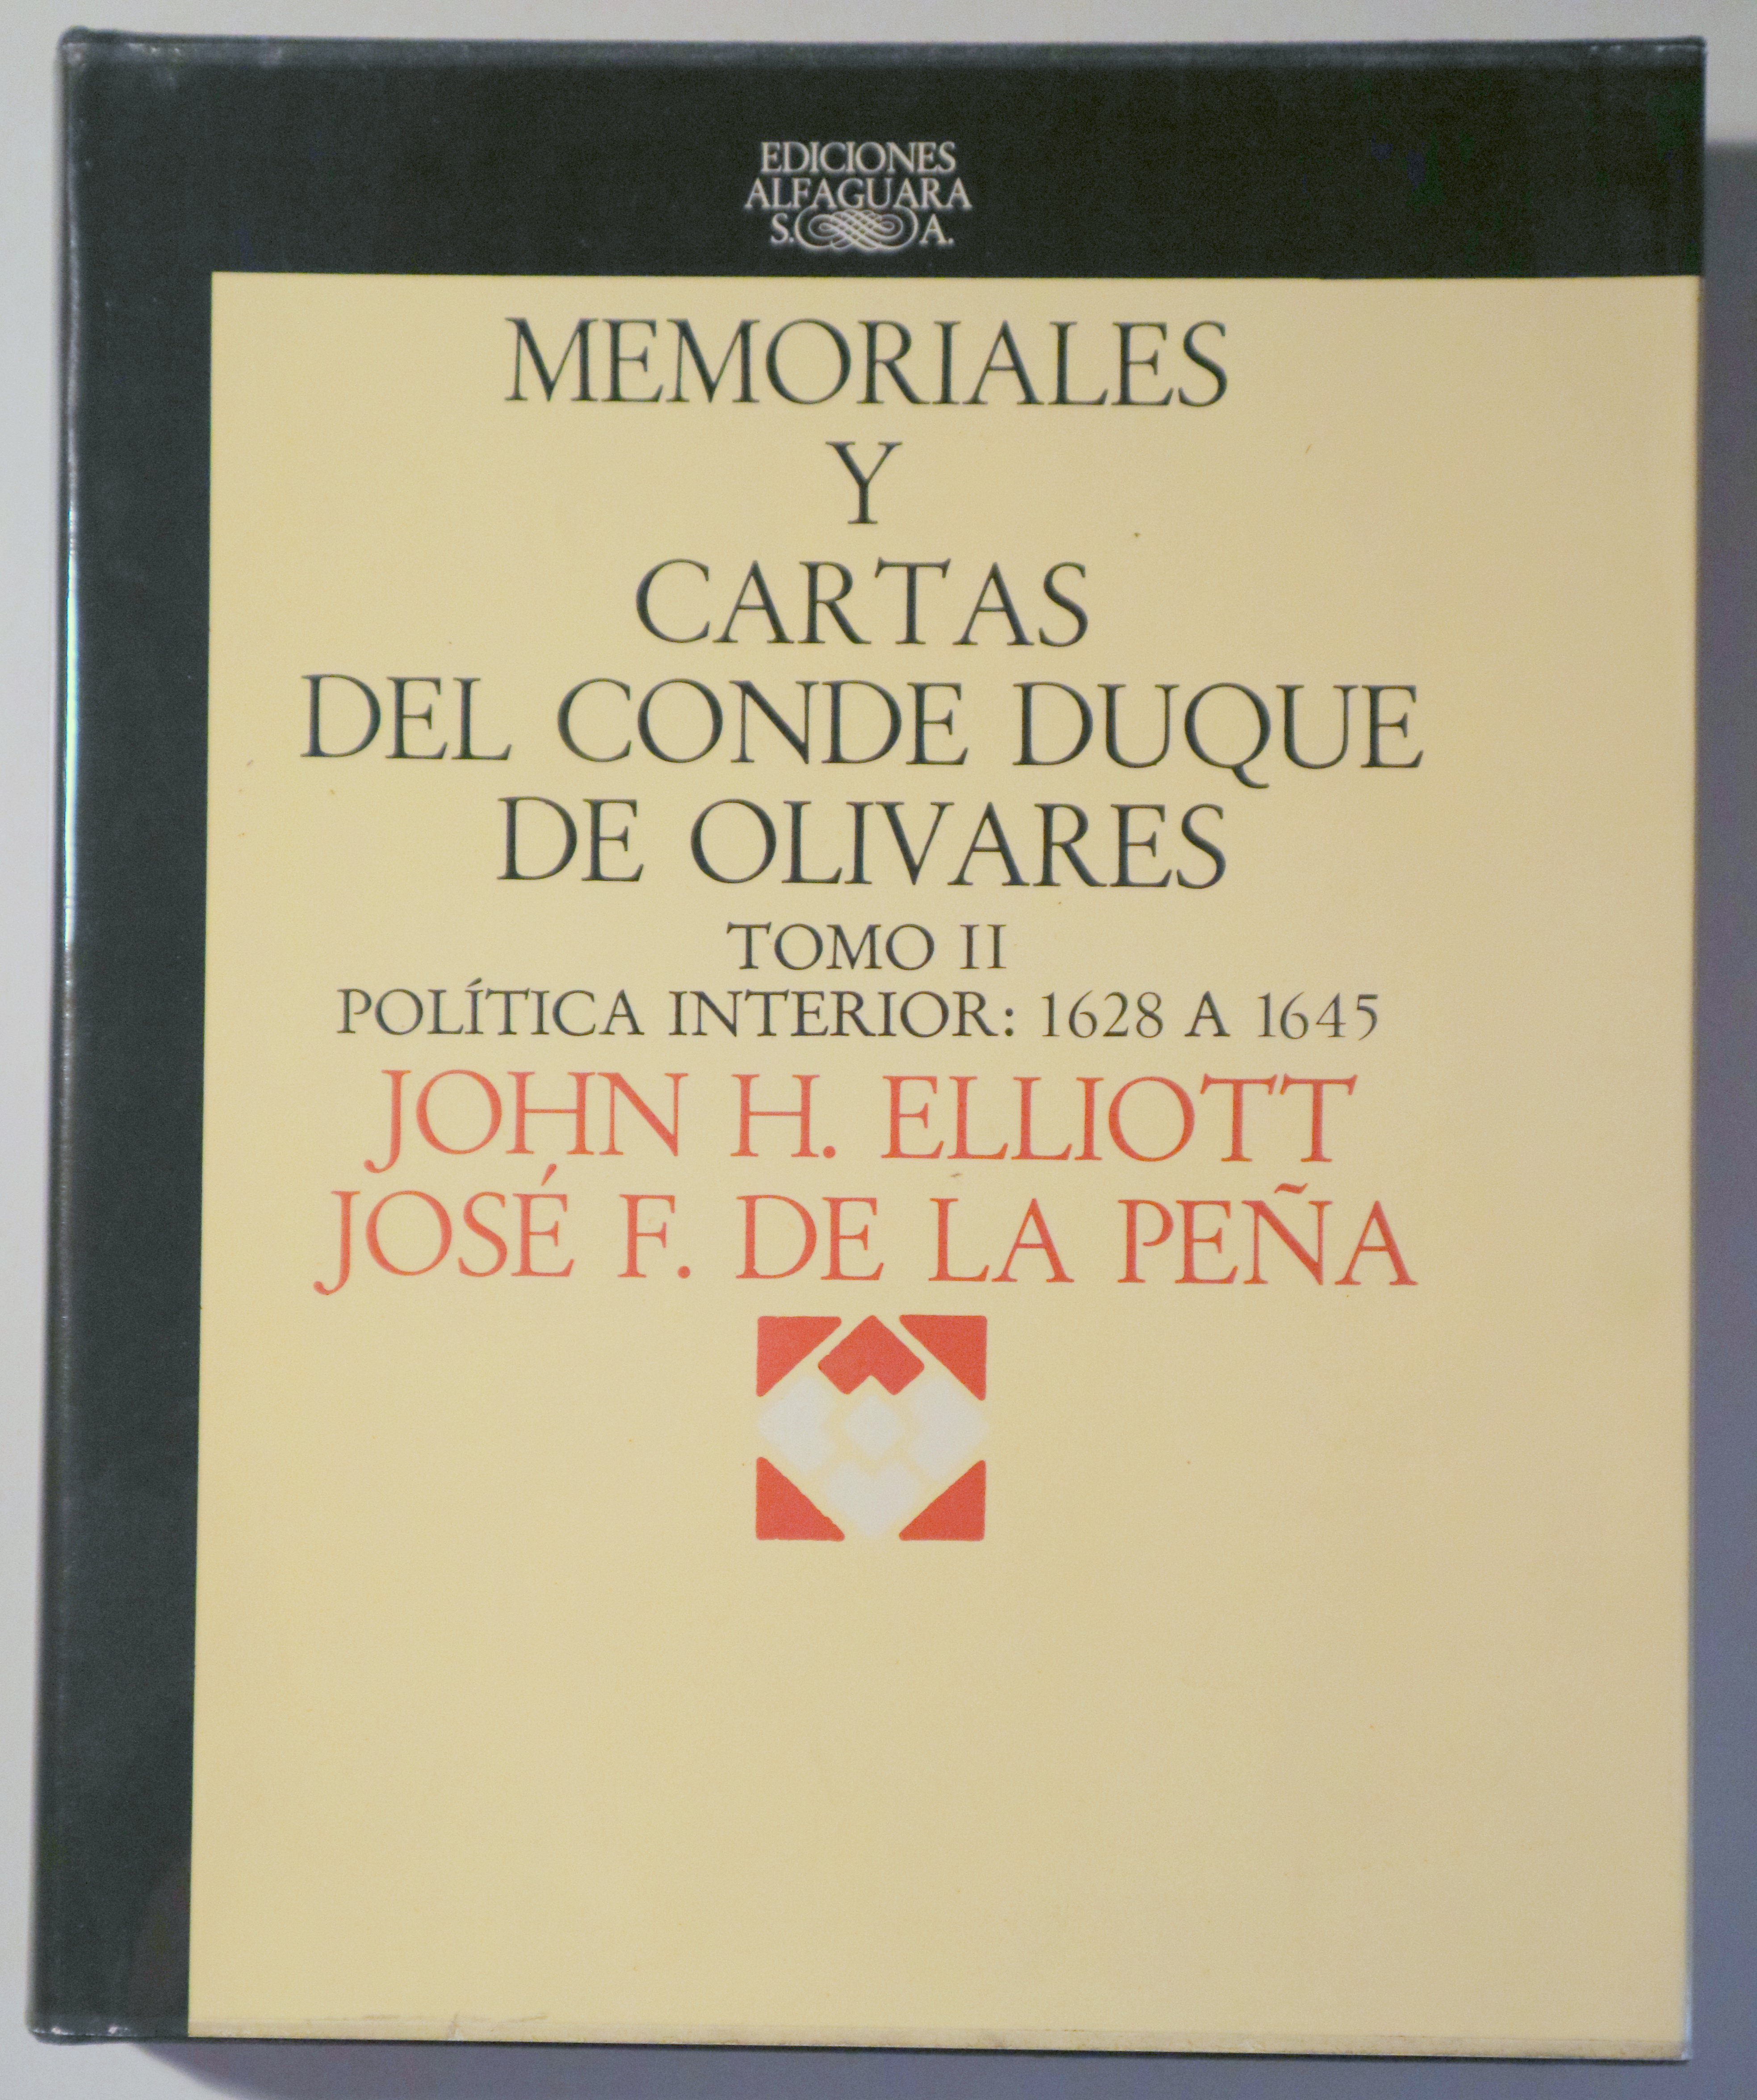 MEMORIALES Y CARTAS DEL CONDE DUQUE DE OLIVARES vol. II. Política interior: 1628 a 1645 - Madrid 1978